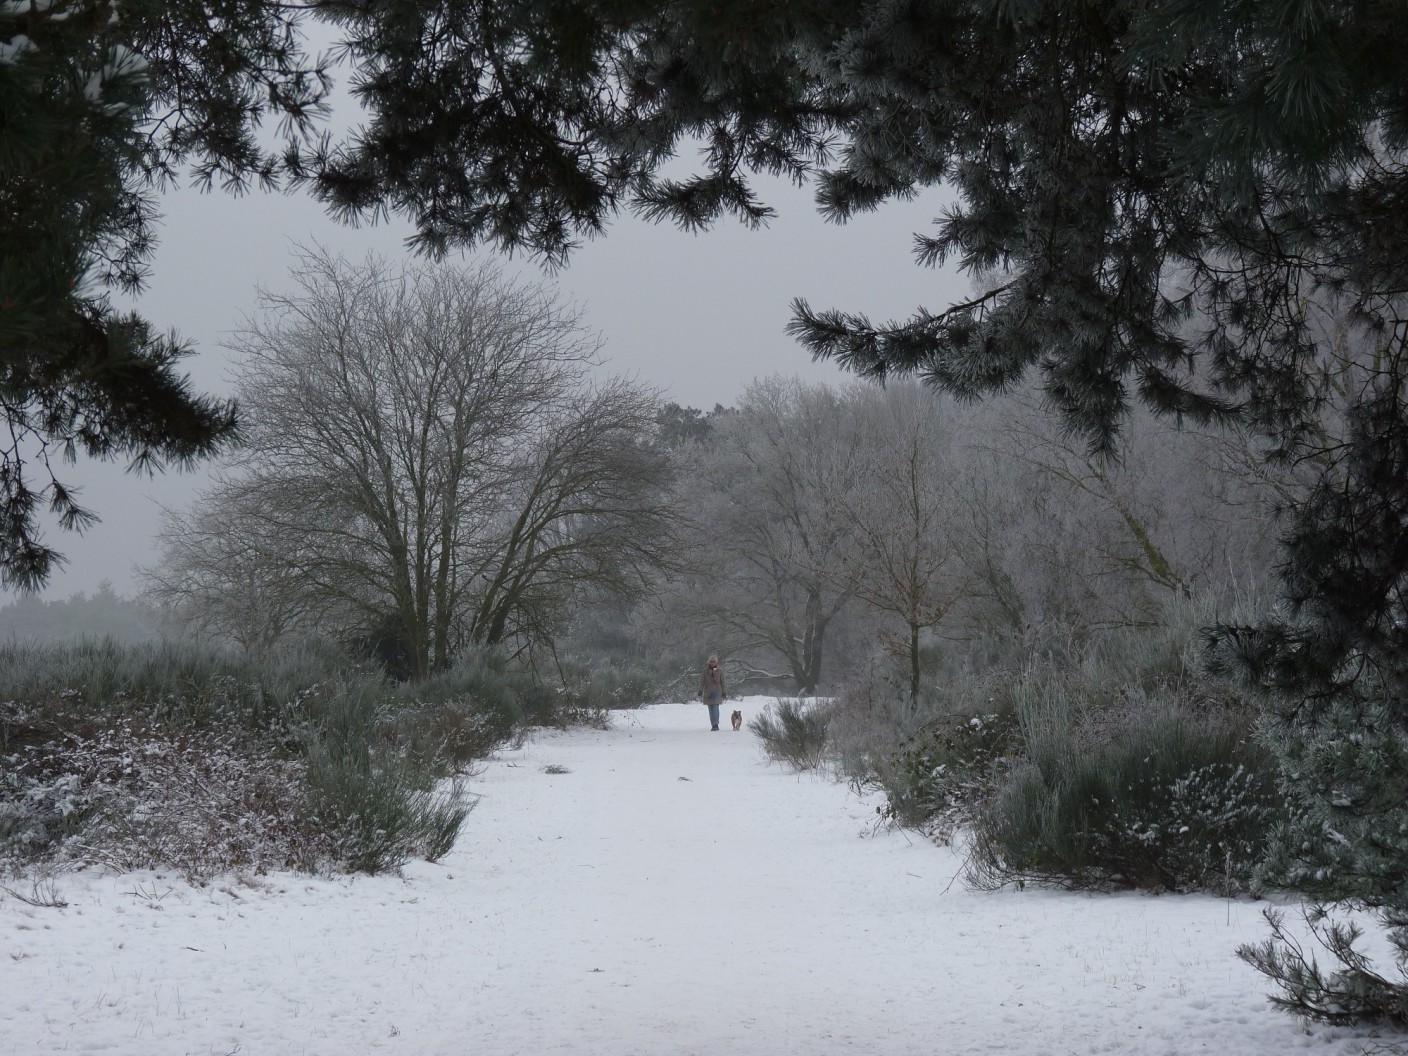 Foto gemaakt door Chris Meewis - Vaalserberg - De Vaalserberg zag er vanochtend weer winters uit. Eergisteren werd het er nog 17 graden, nu lag er 5 centimeter sneeuw.